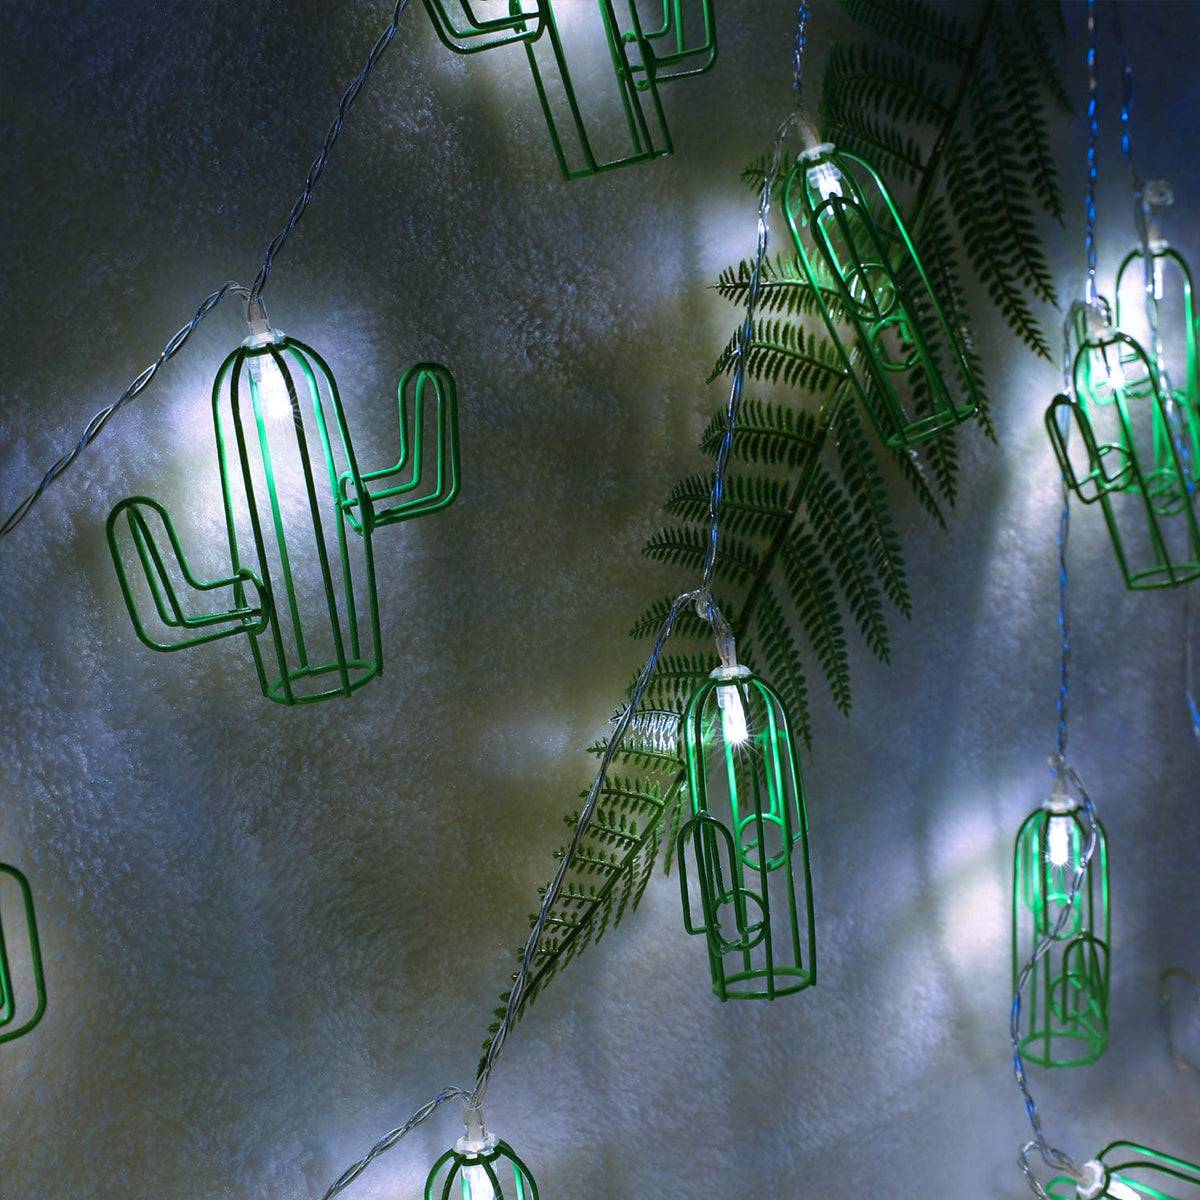 79802 Διακοσμητική Γιρλάντα Green Cactus 6 Μέτρα με Διακόπτη On/Off - 40 LED 4W με Μπαταρίες 3xAA & Διάφανο Καλώδιο IP20 Ψυχρό Λευκό 6000K Μ6m - ledmania.gr